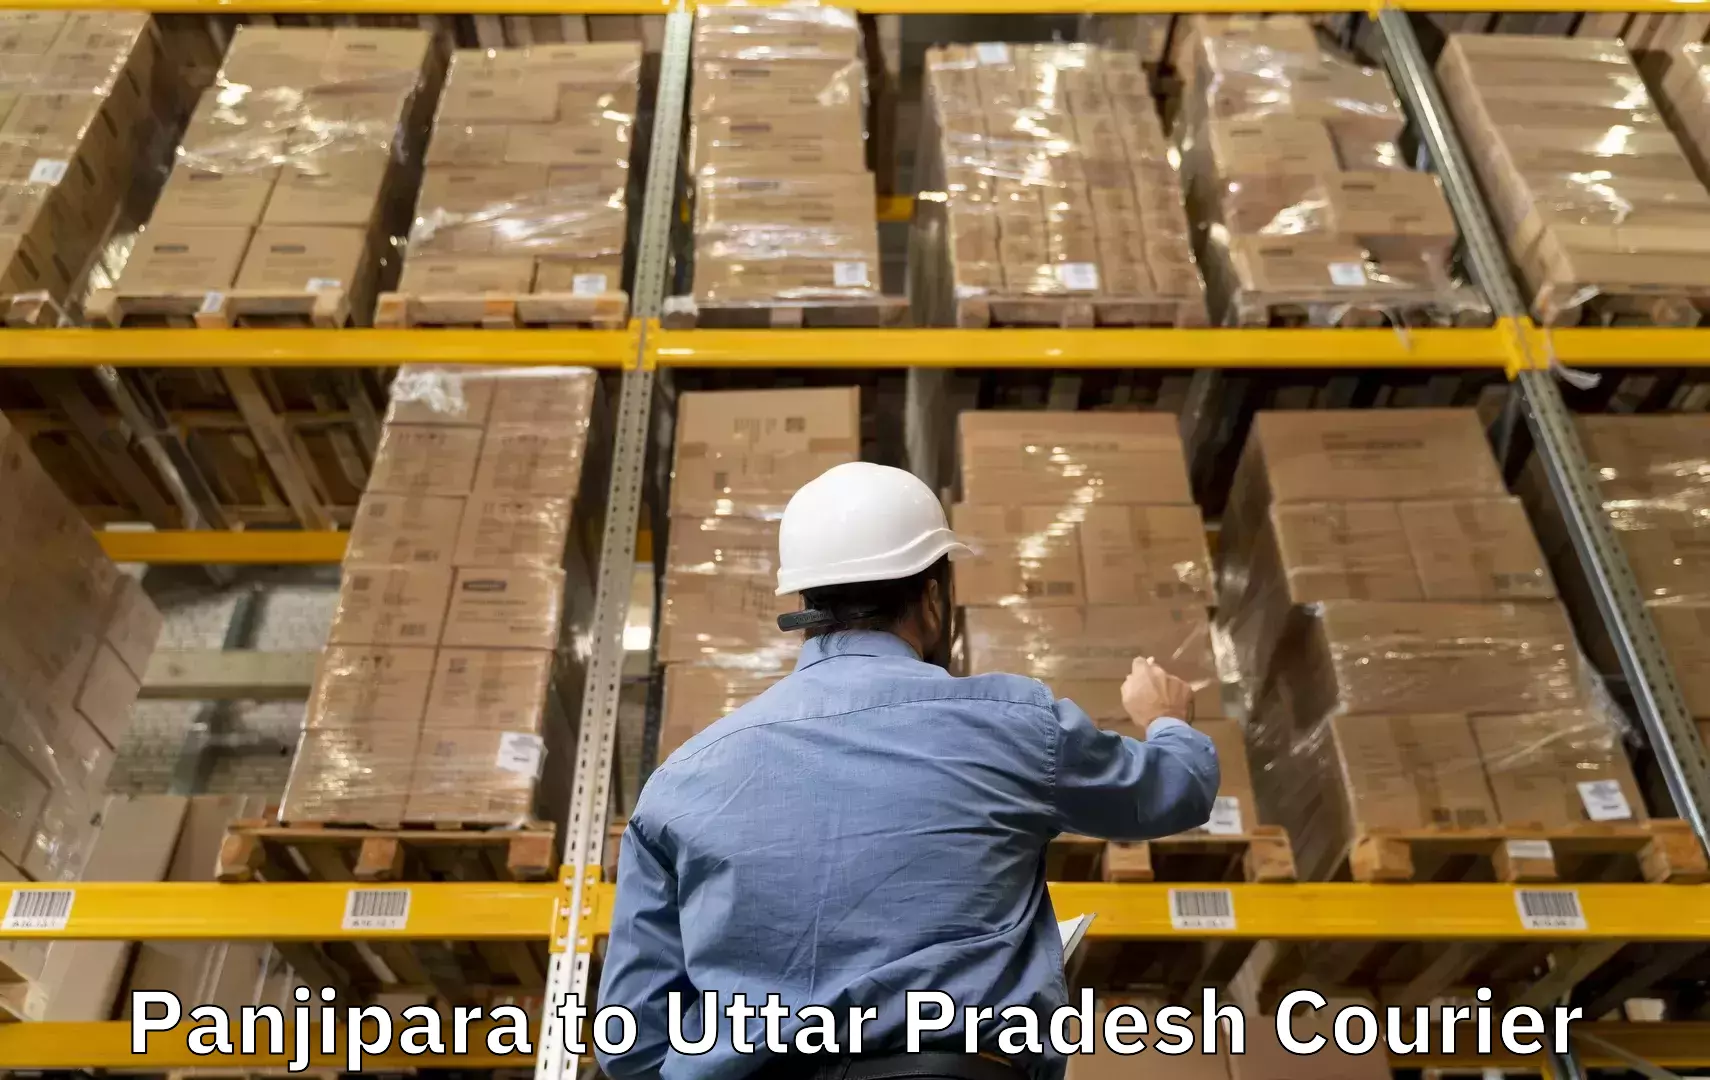 Baggage shipping rates calculator Panjipara to Rasra